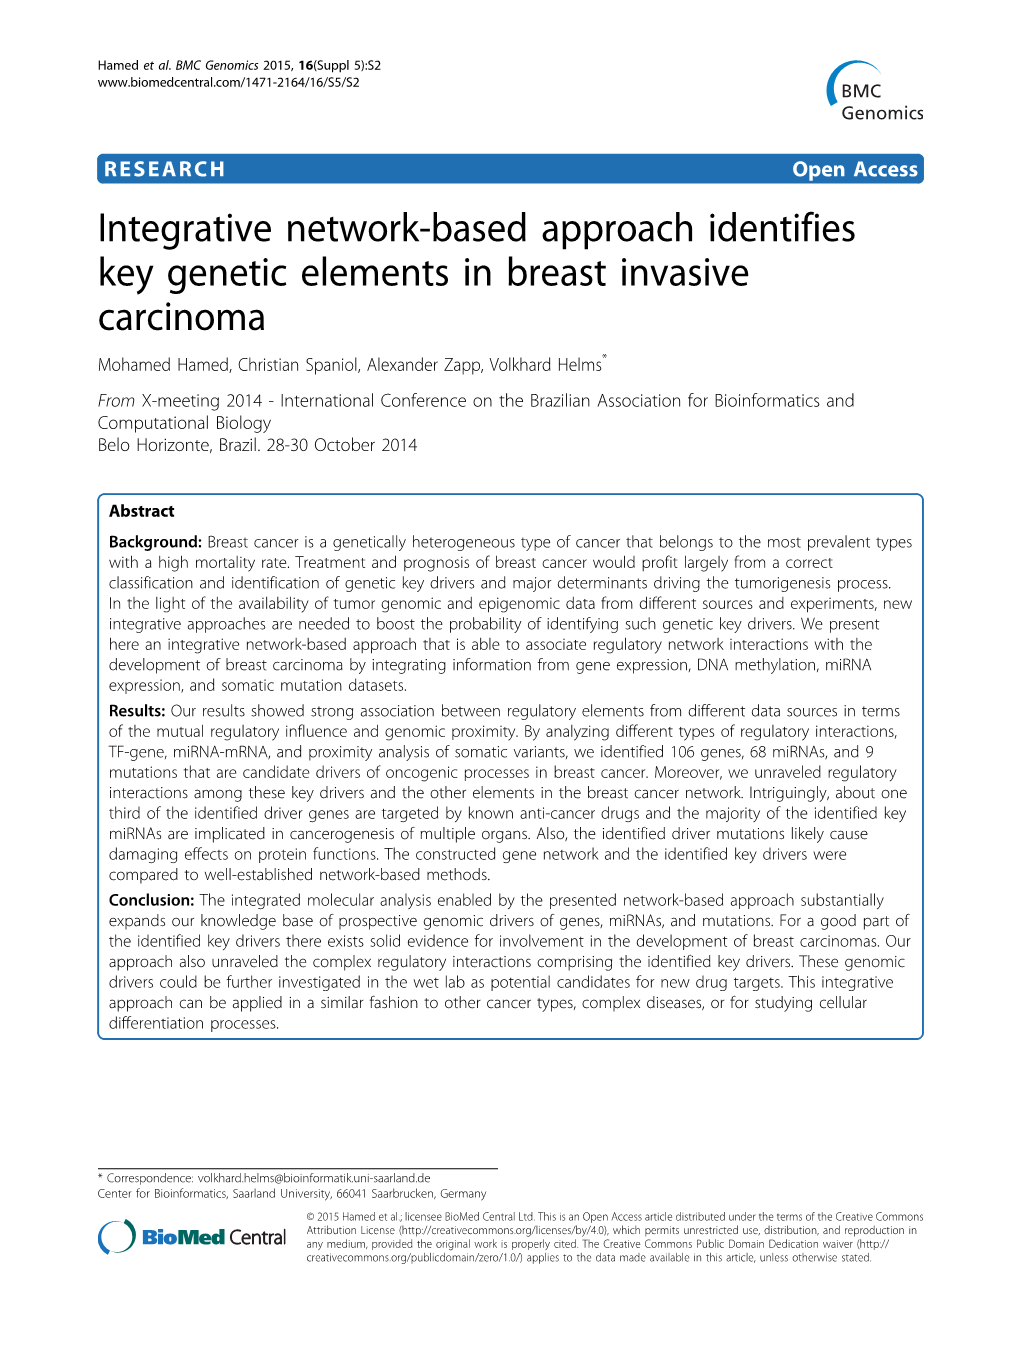 Integrative Network-Based Approach Identifies Key Genetic Elements In